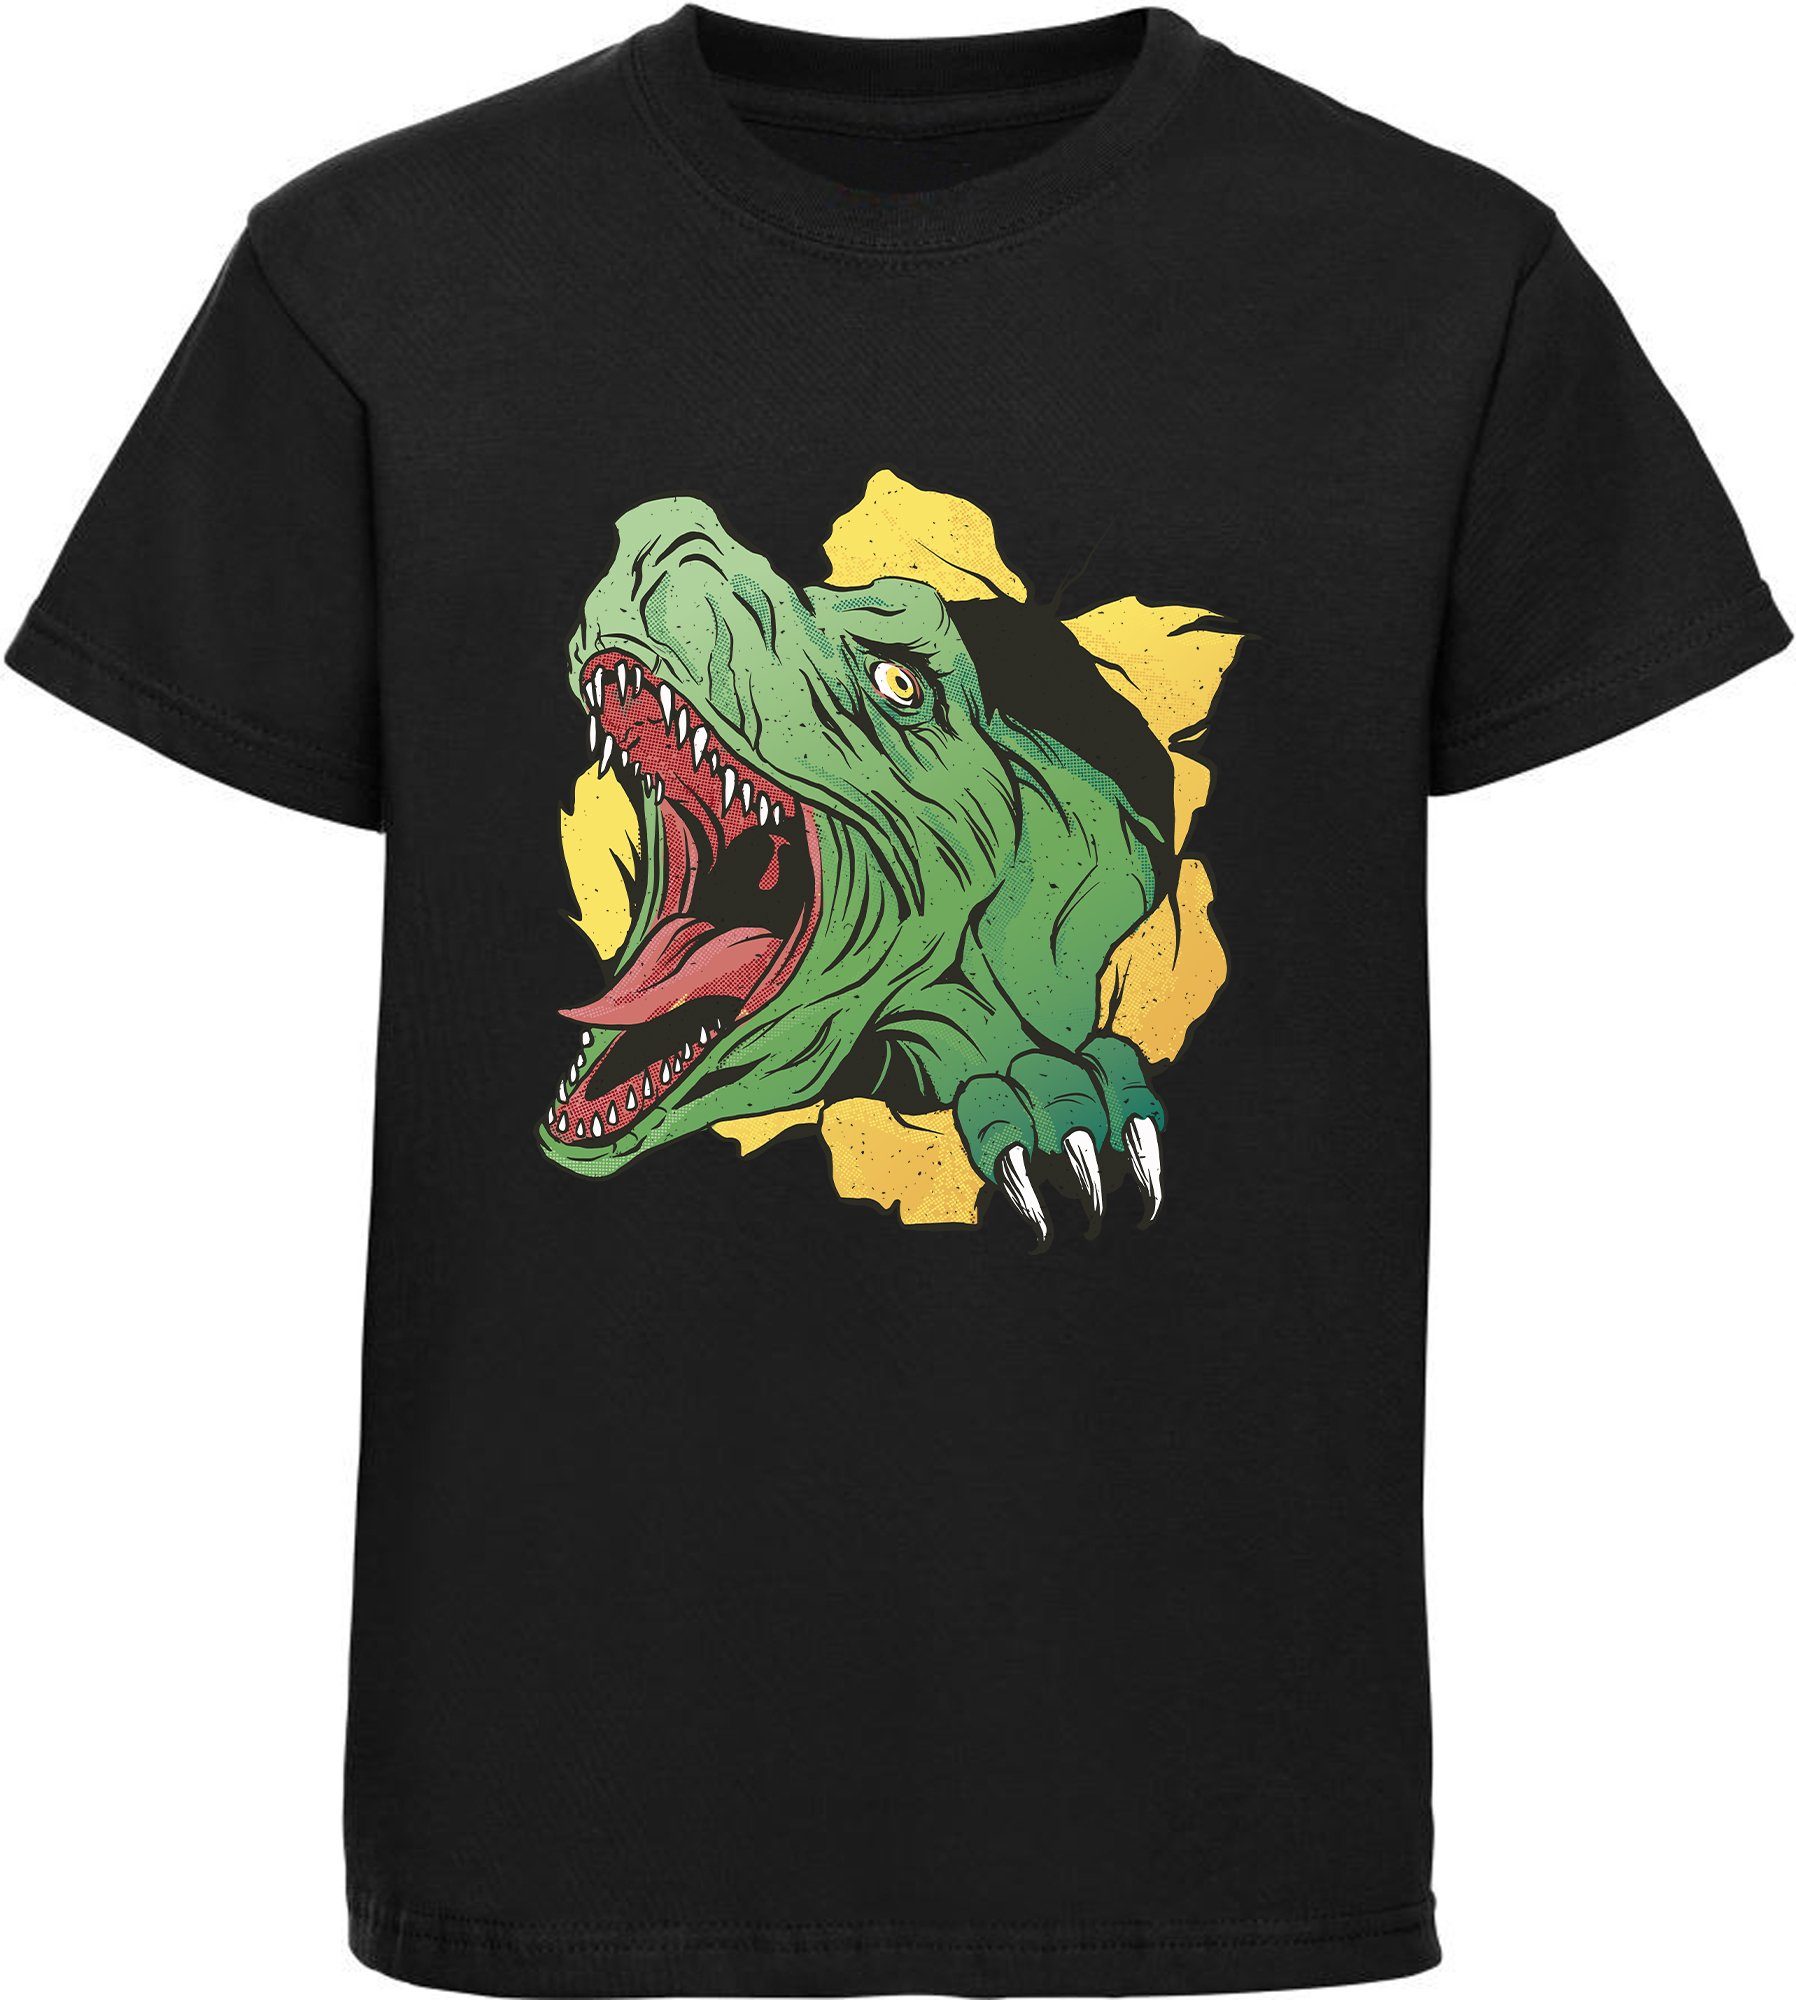 MyDesign24 Print-Shirt bedrucktes Kinder T-Shirt mit T-Rex Kopf Baumwollshirt mit Dino, schwarz, weiß, rot, blau, i68